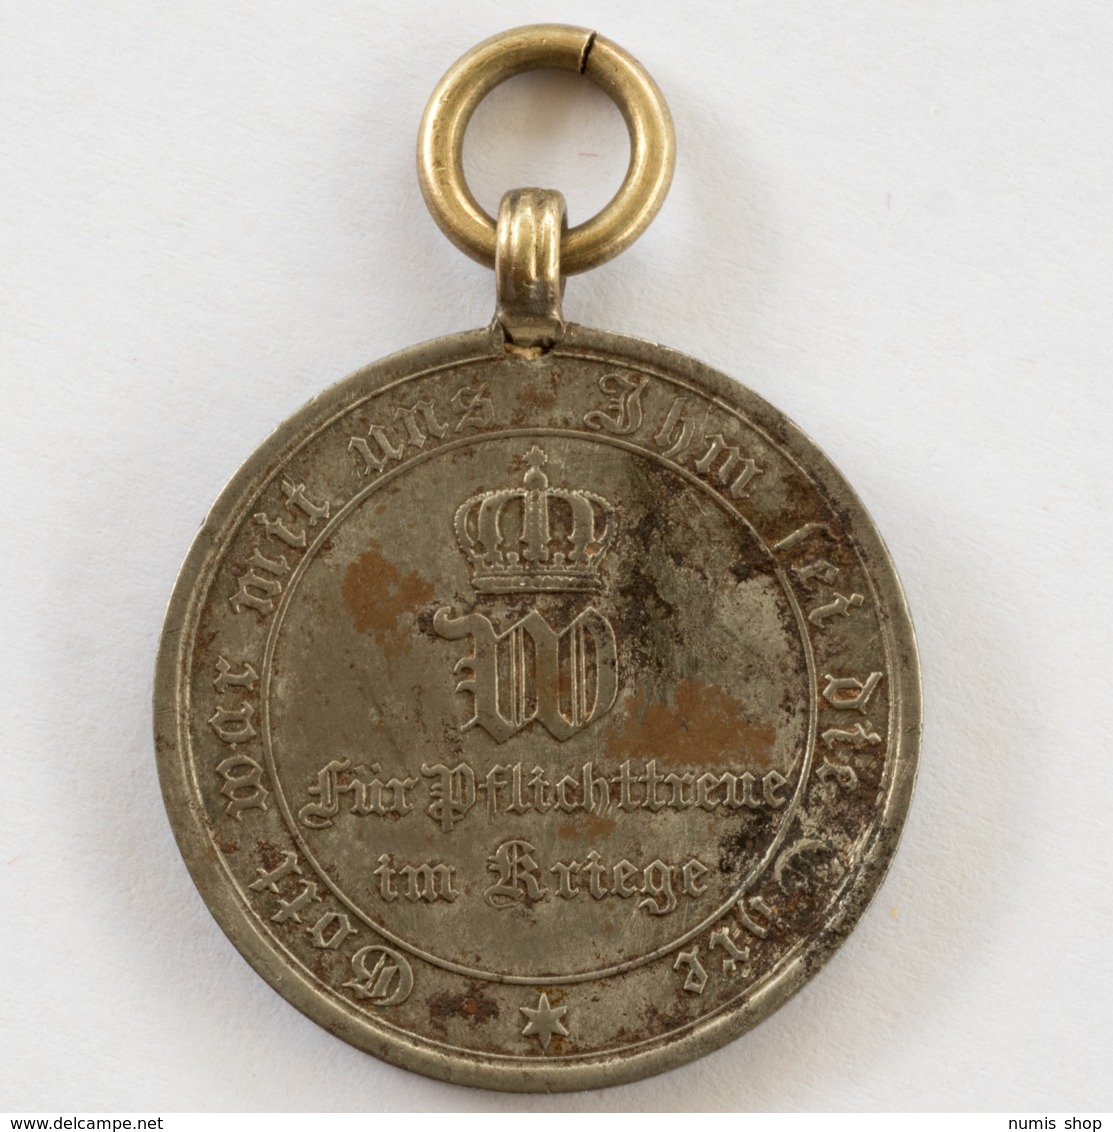 GERMANY - EMPIRE - Medaille - Für Pflichttreue Im Kriege - 1870 / 71 - #962 - Deutsches Reich